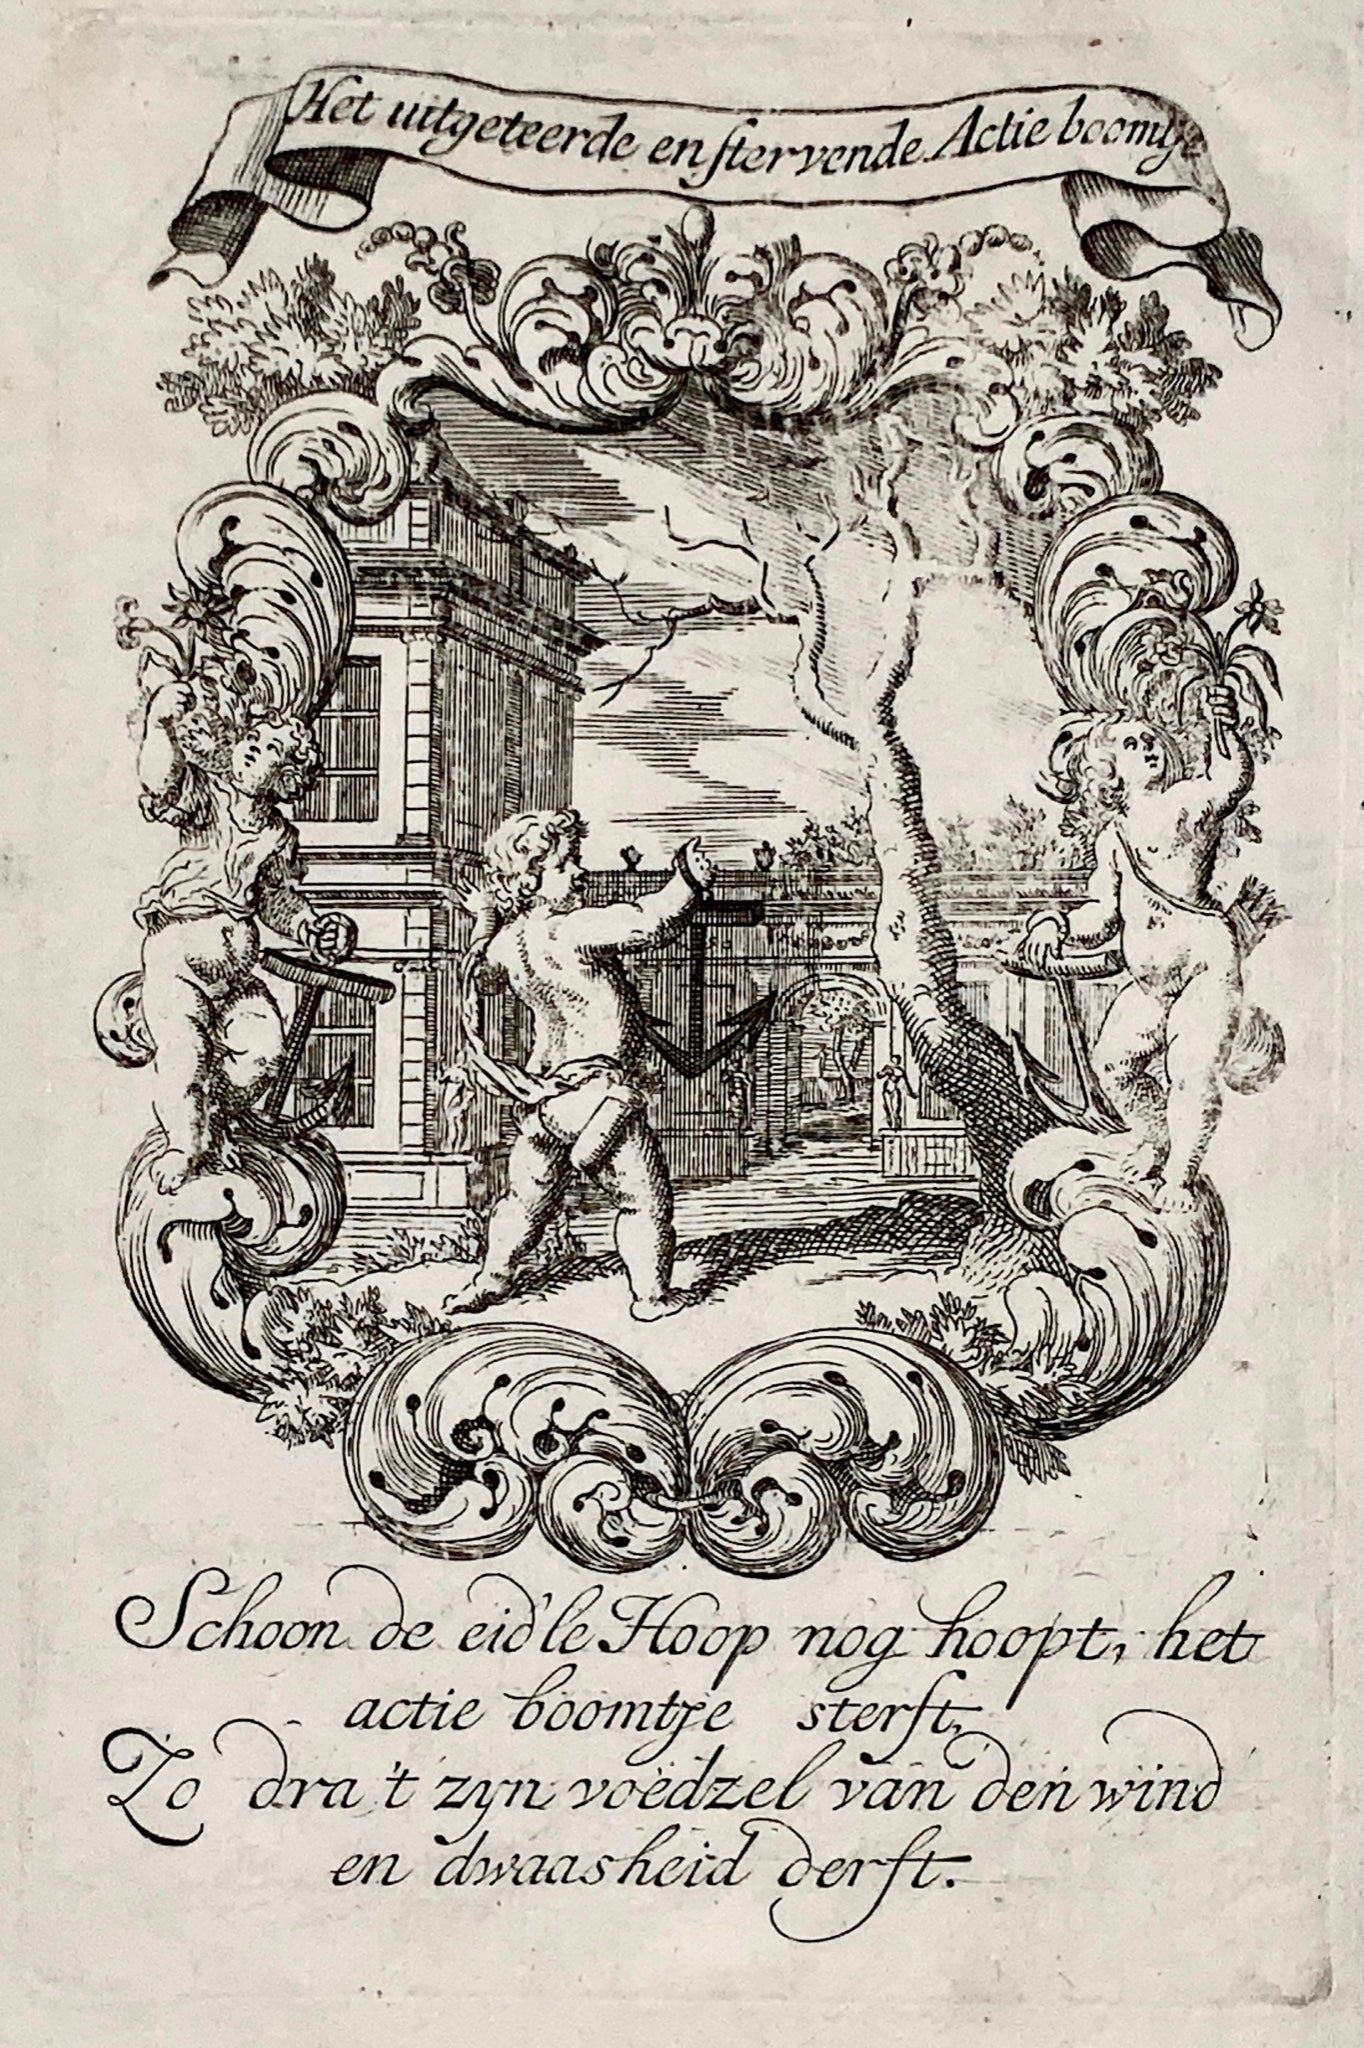 1720 Allégorie de la bulle des mers du Sud, bourse, Pieter van den Berge, eau-forte